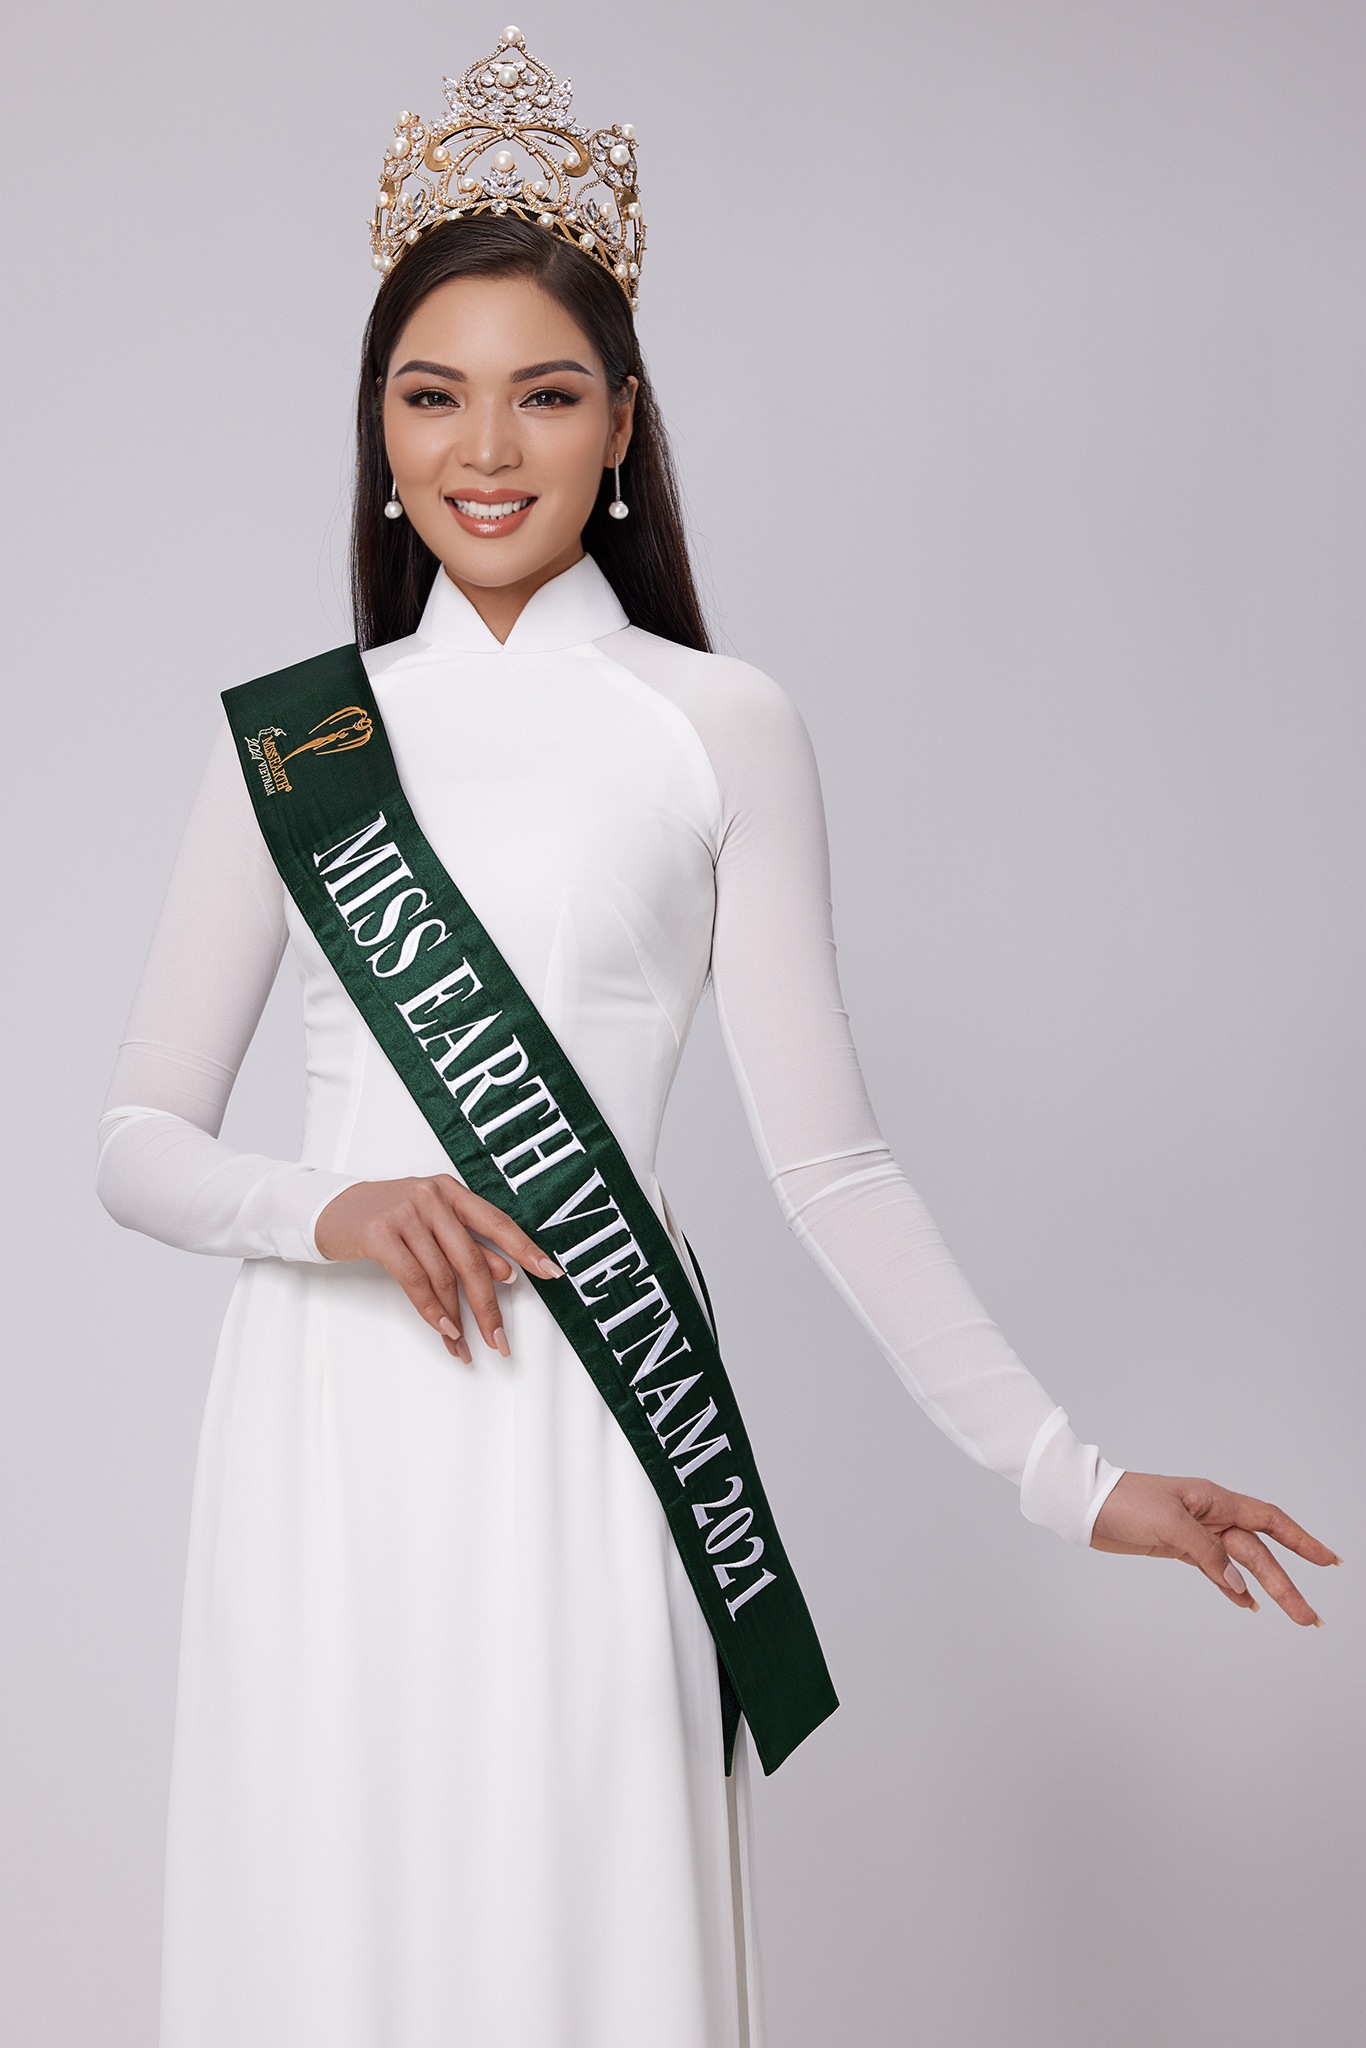 Vì sao người đẹp Vân Anh được lựa chọn dự thi Miss Earth 2021? - Ảnh 4.